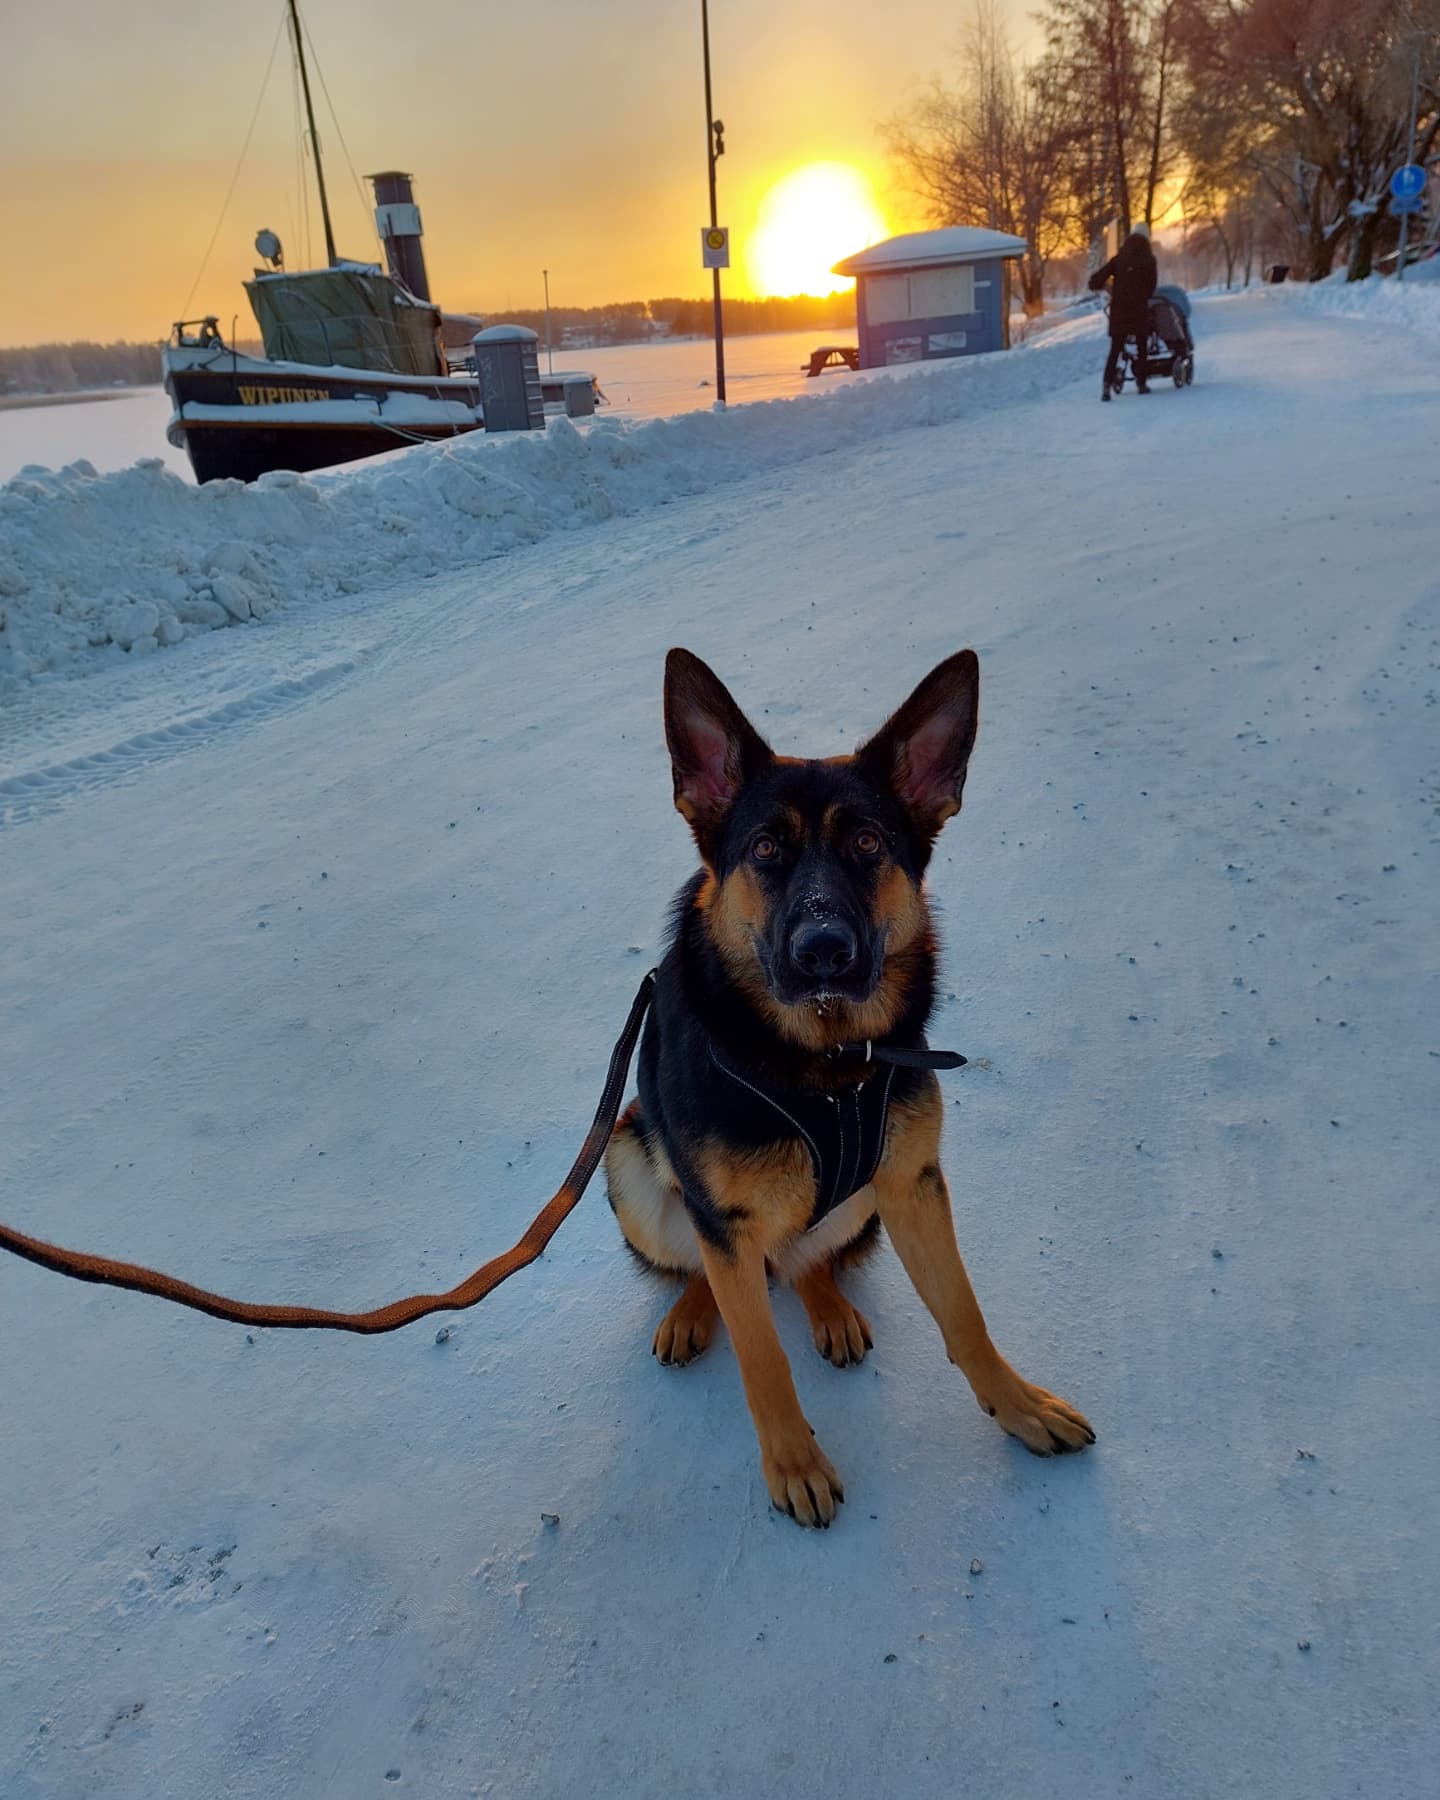 Koira istuu maassa talvisessa maisemassa. Taustalla aurinko laskee. Koiran takana vene laiturissa ja lastenvaunuja työntävä ihminen.